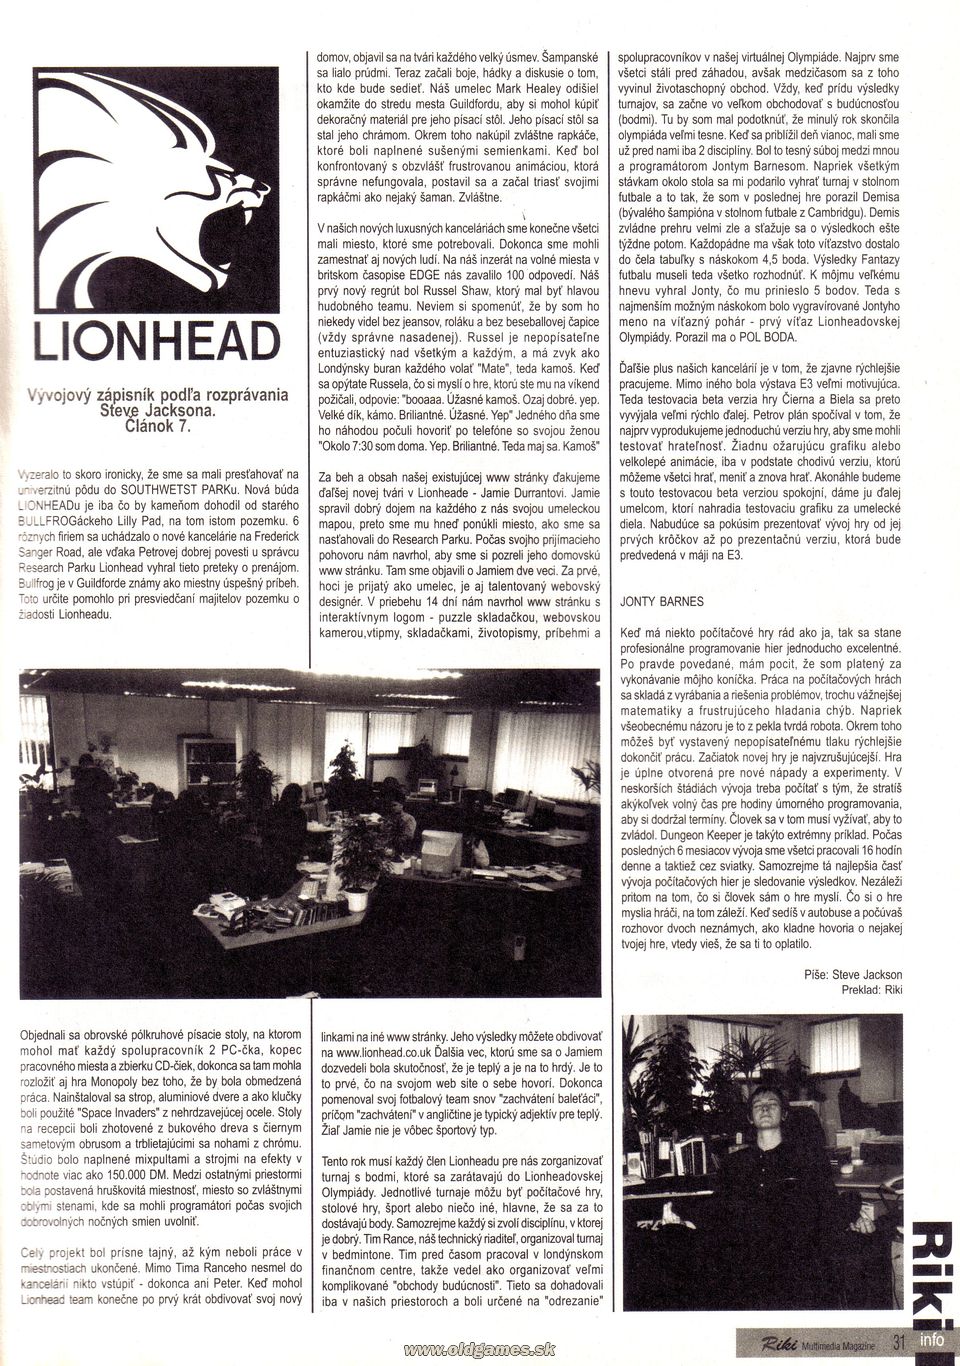 Lionhead: Vývojový zápisník podľa Stevea Jacksona č.7